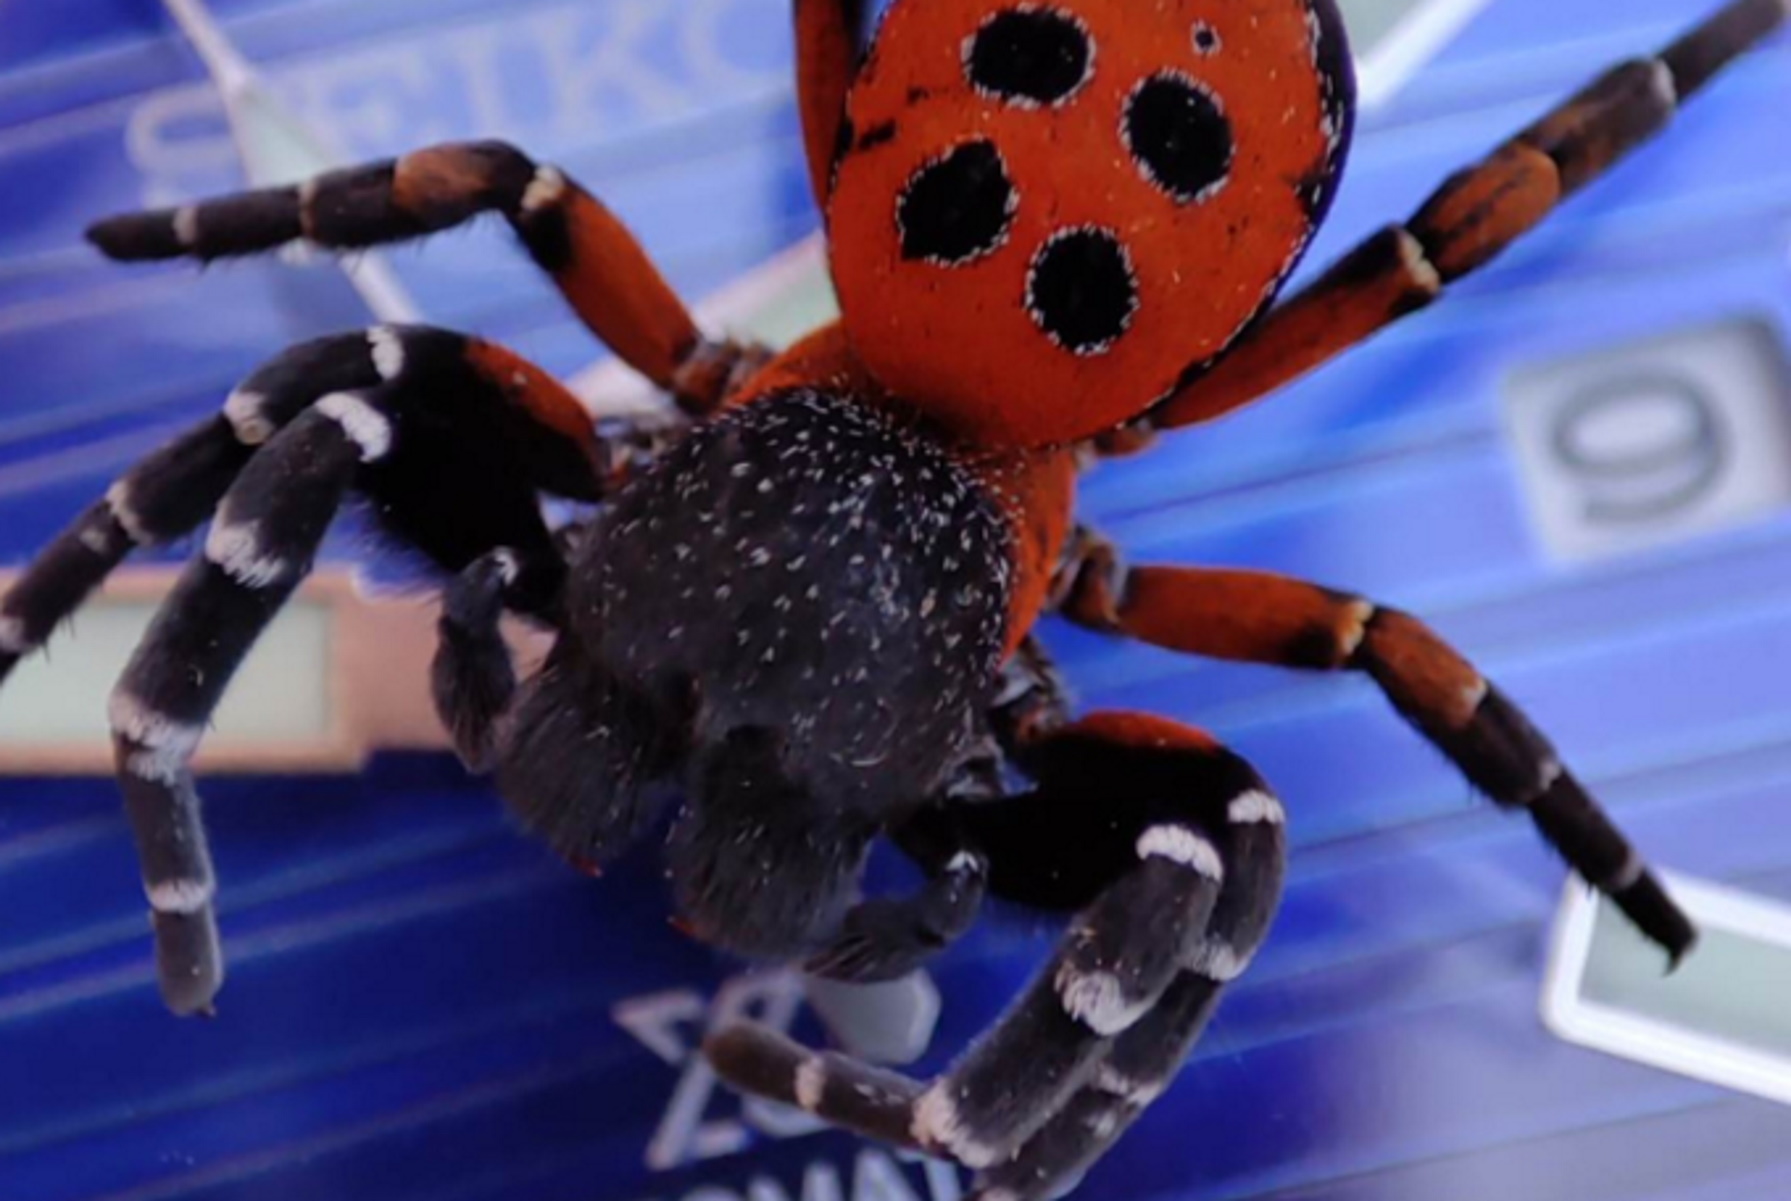 Ξάνθη: Σπάνια αράχνη πασχαλίτσα στην παλάμη περαστικού – Πεθαίνει για να ζήσουν τα παιδιά της